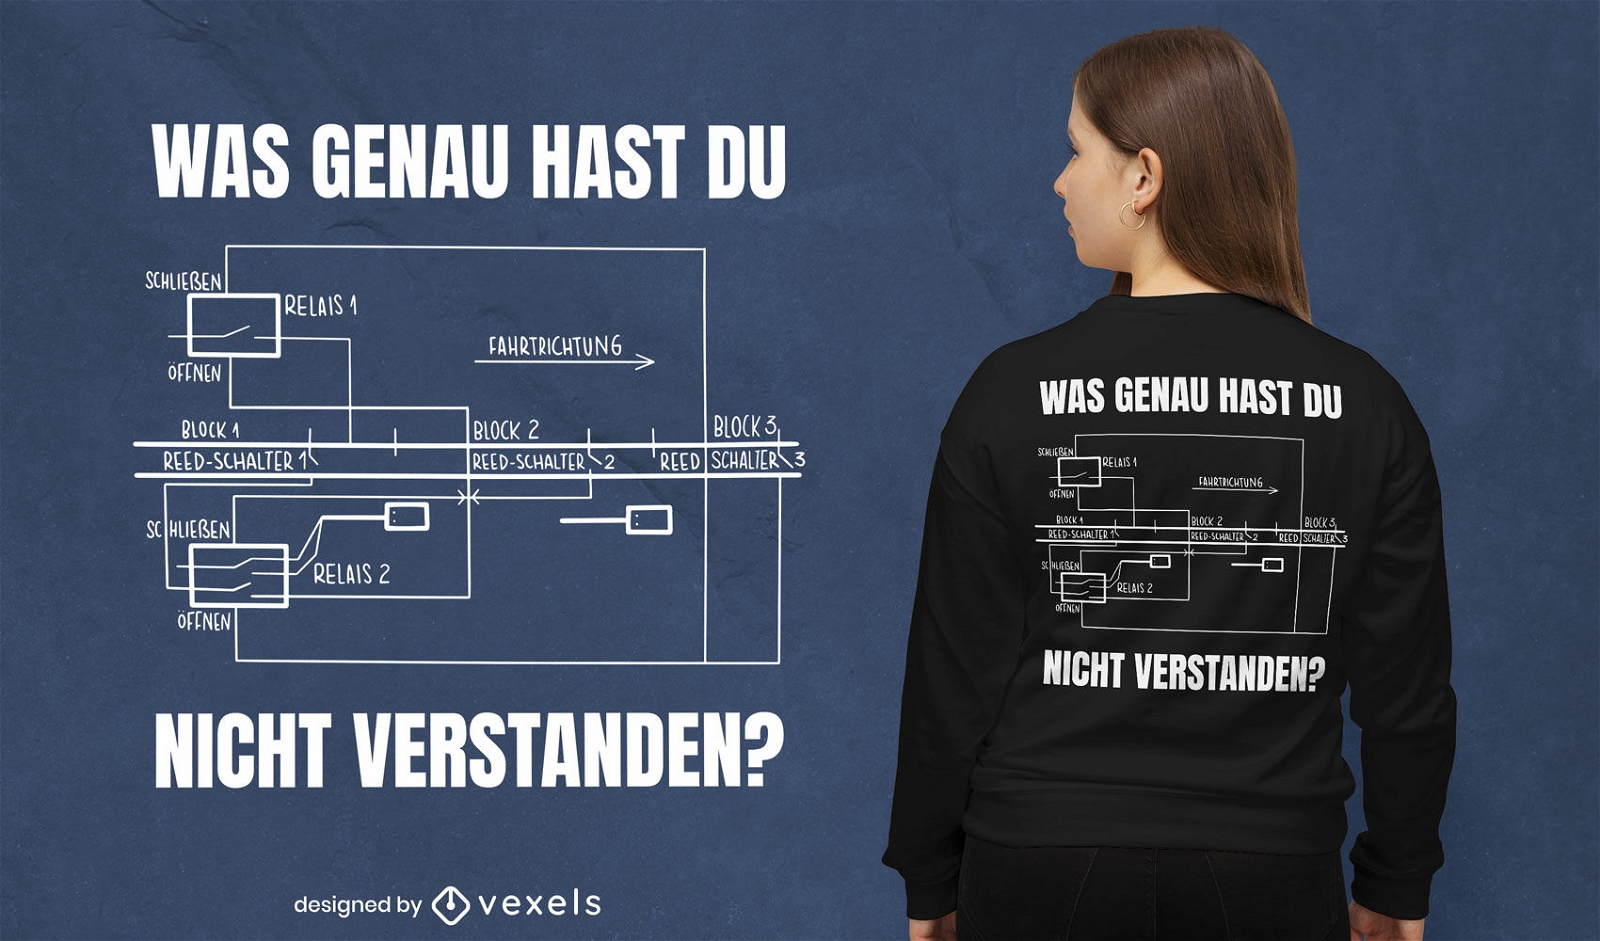 Dise?o de camiseta de diagrama ferroviario alem?n.